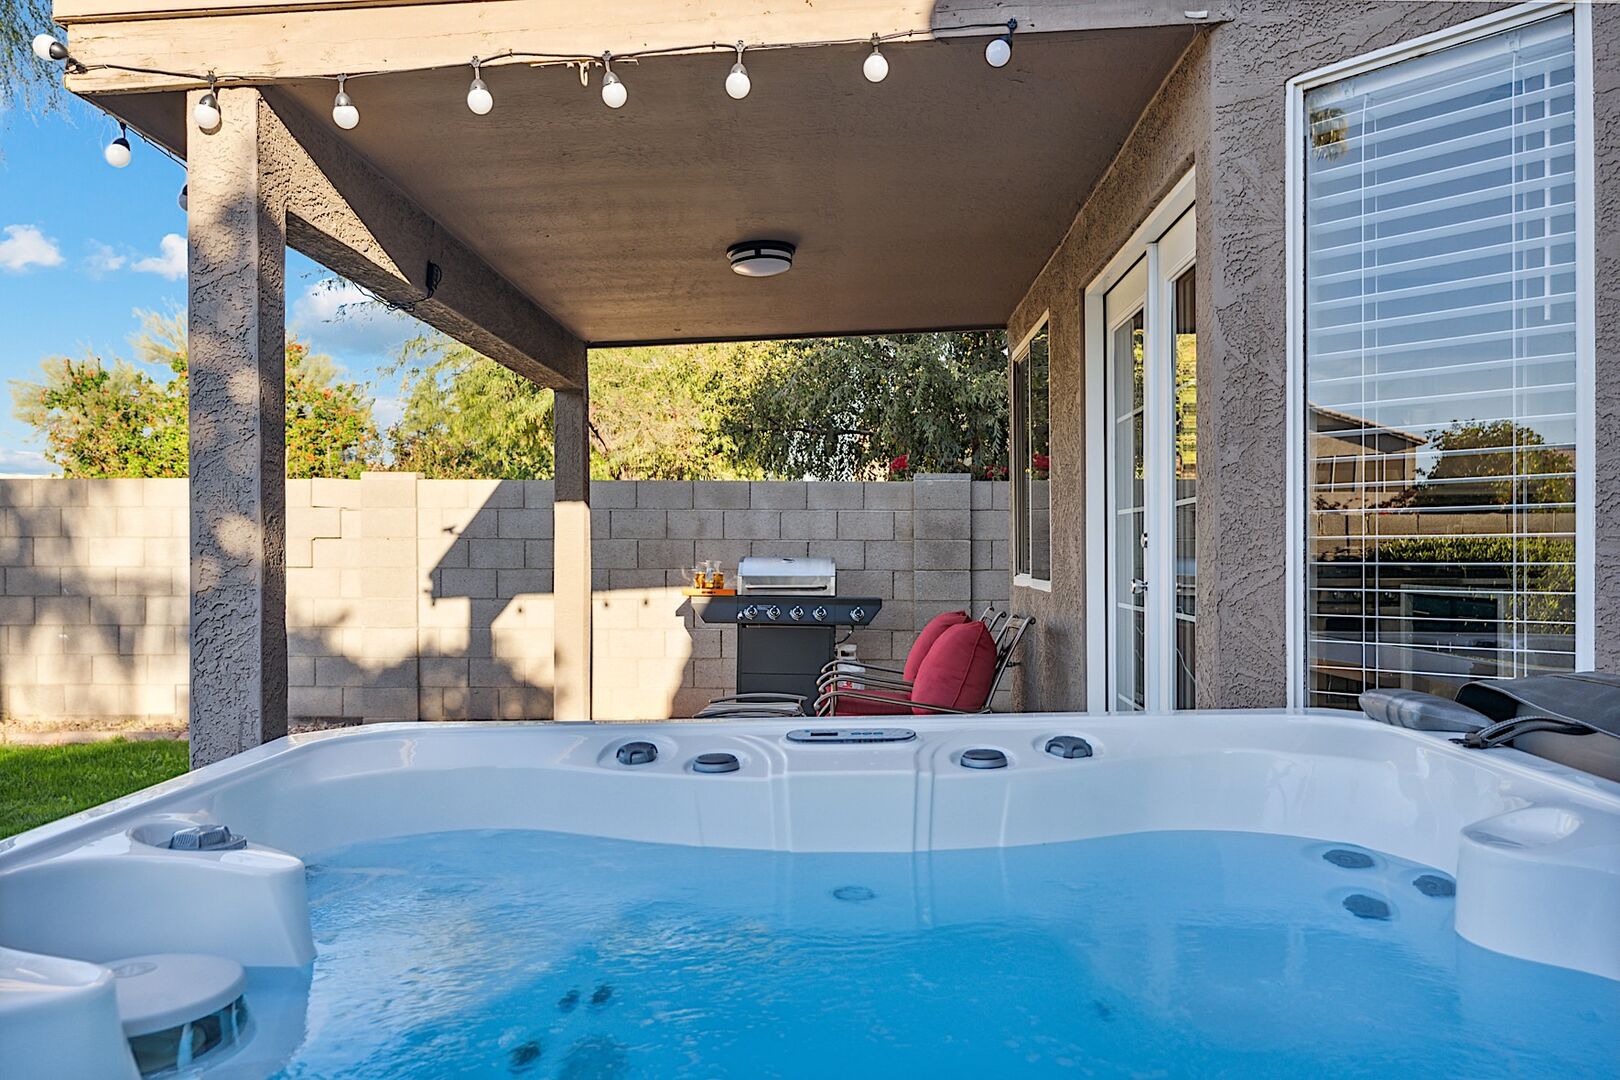 Backyard - Hot Tub & String Lights